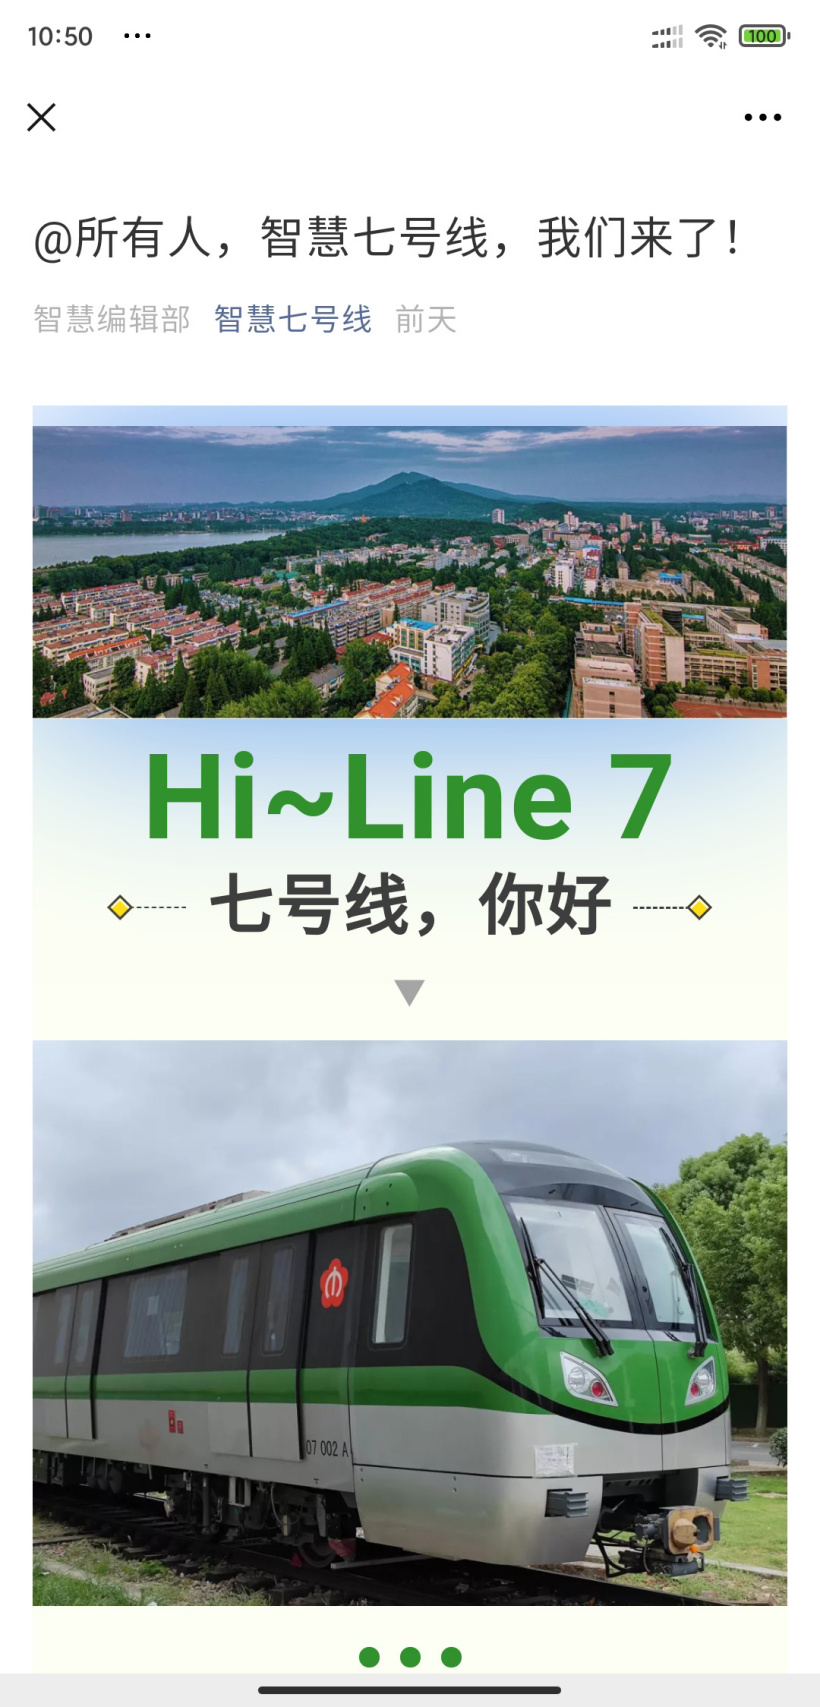 南京首条全自动驾驶地铁 7 号线列车亮相：草绿色车身，设计时速 80 公里